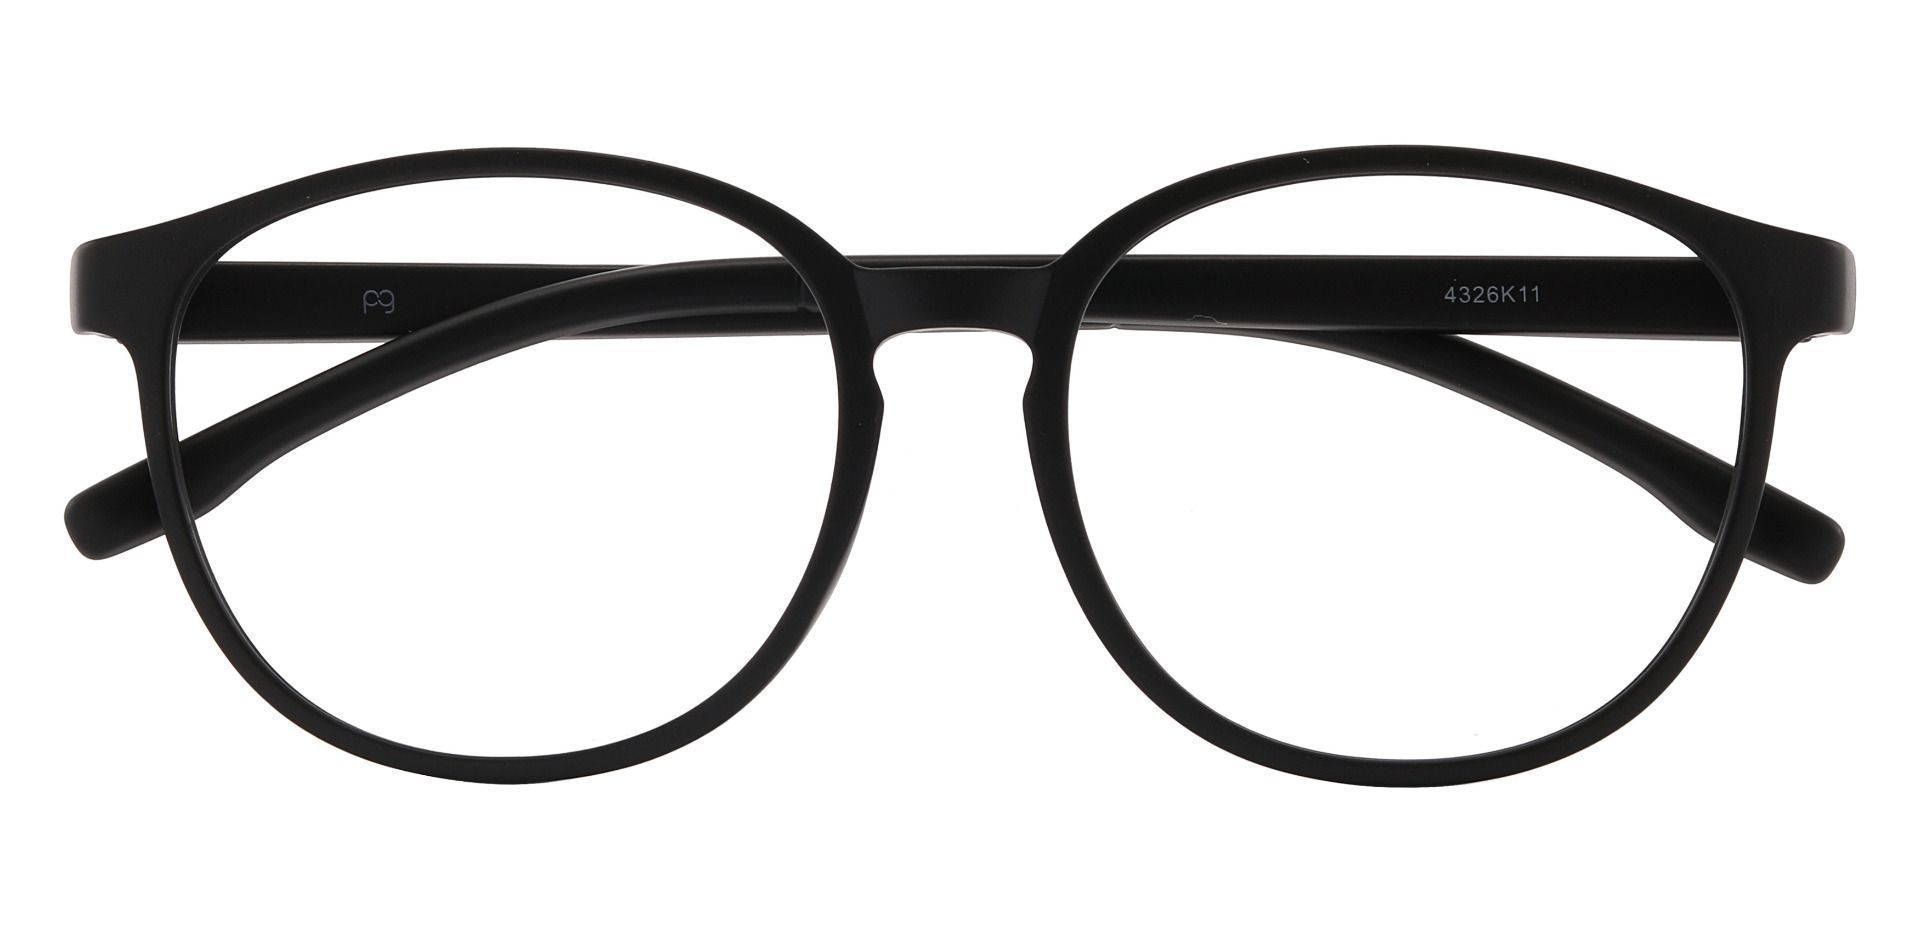 Molasses Oval Eyeglasses Frame - Black